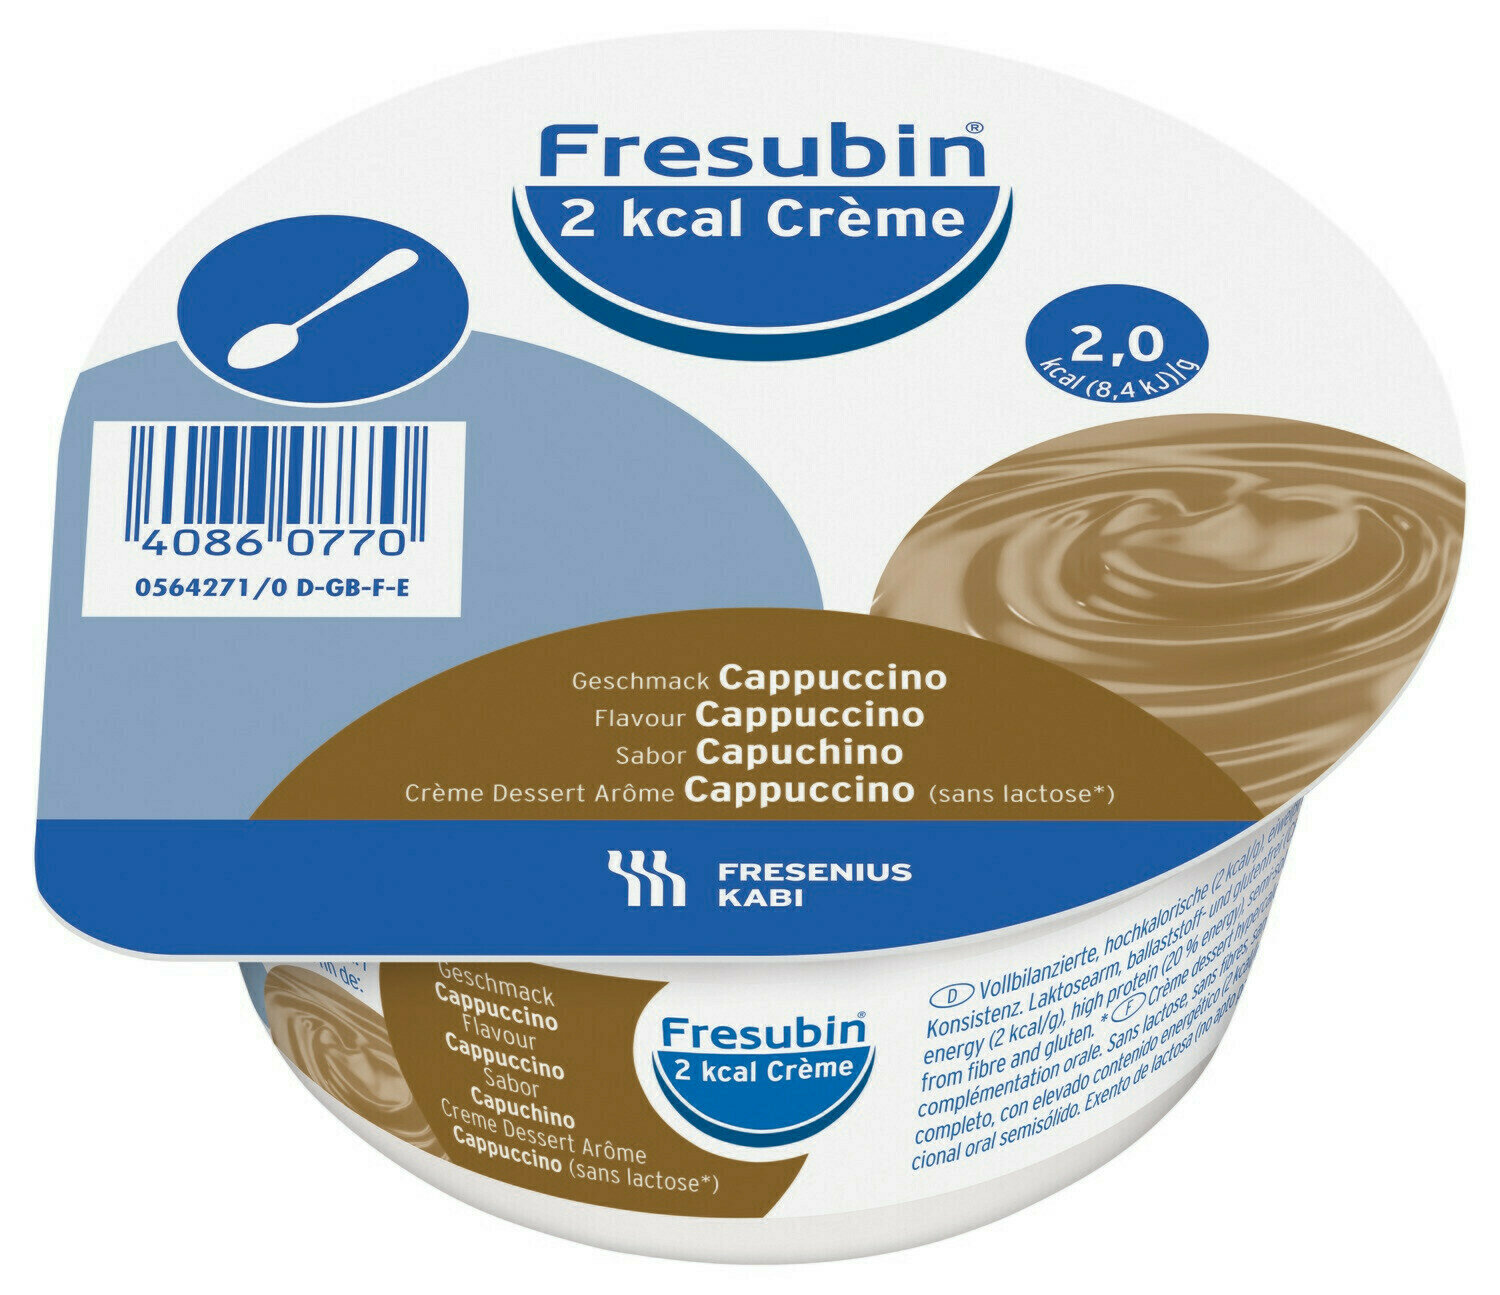 Купить Fresubin, Фрезубин крем 2 ккал 125 гр 1 стаканчик вкус капучино, Fresenius Kabi